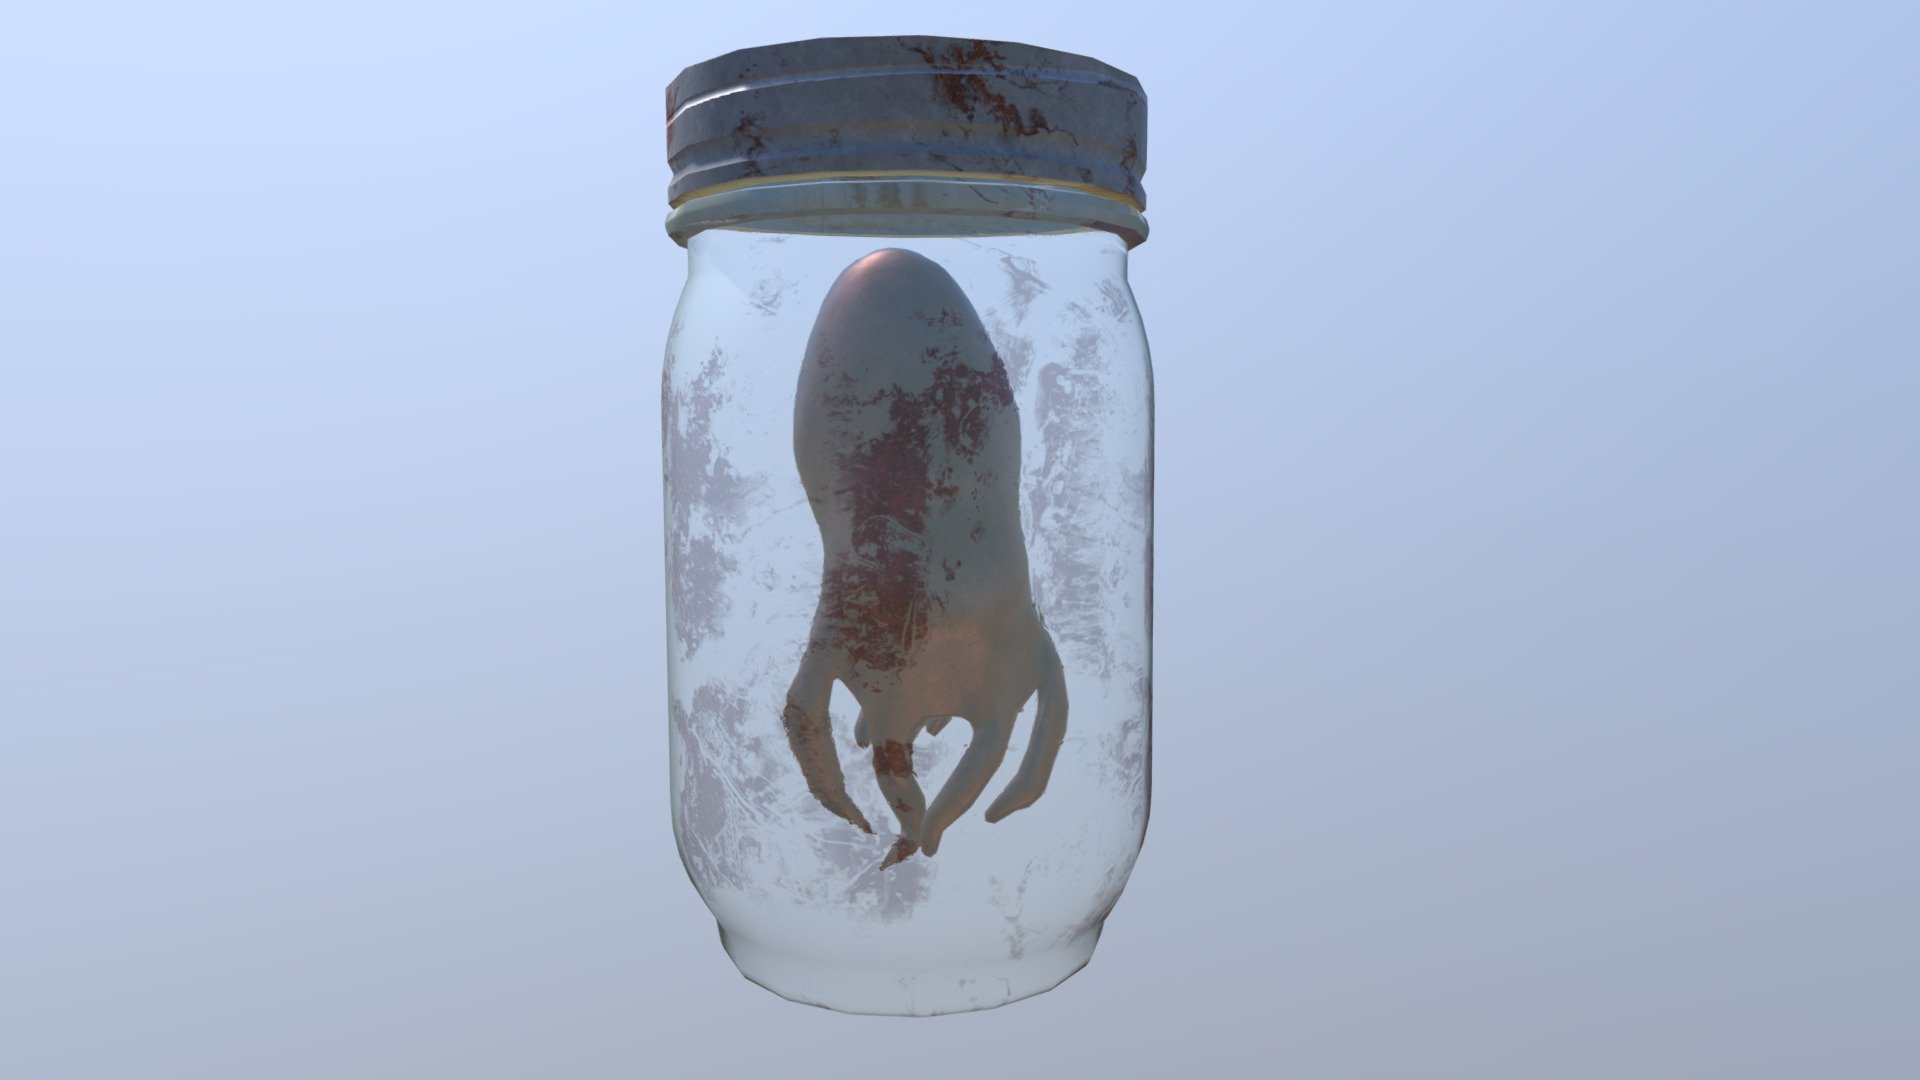 Octopus in jar